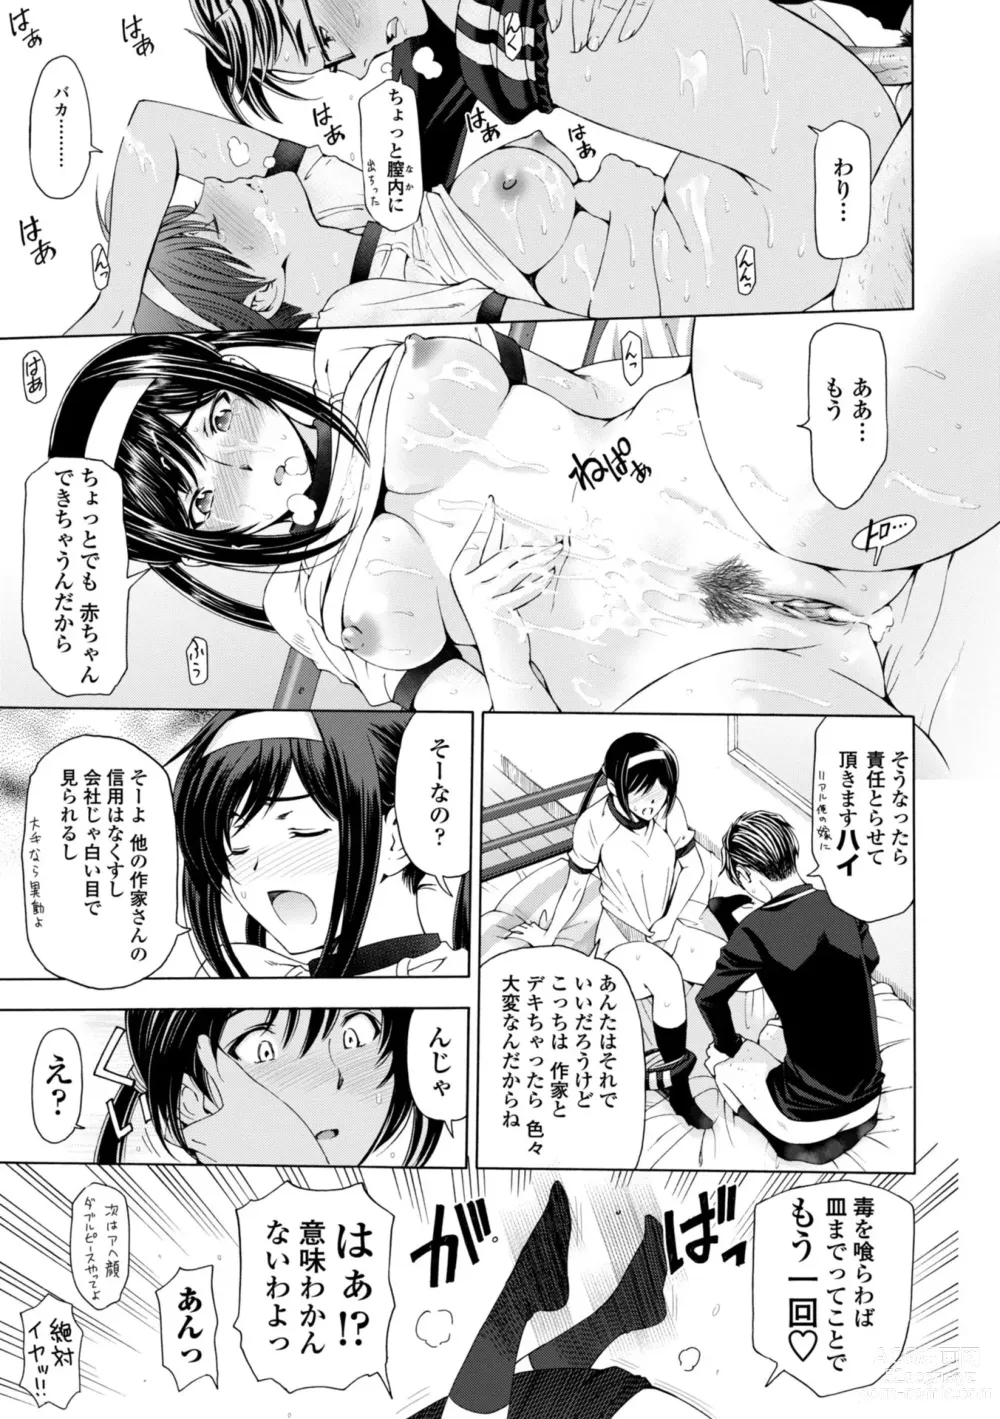 Page 237 of manga Ane wa Shota o Suki ni Naru